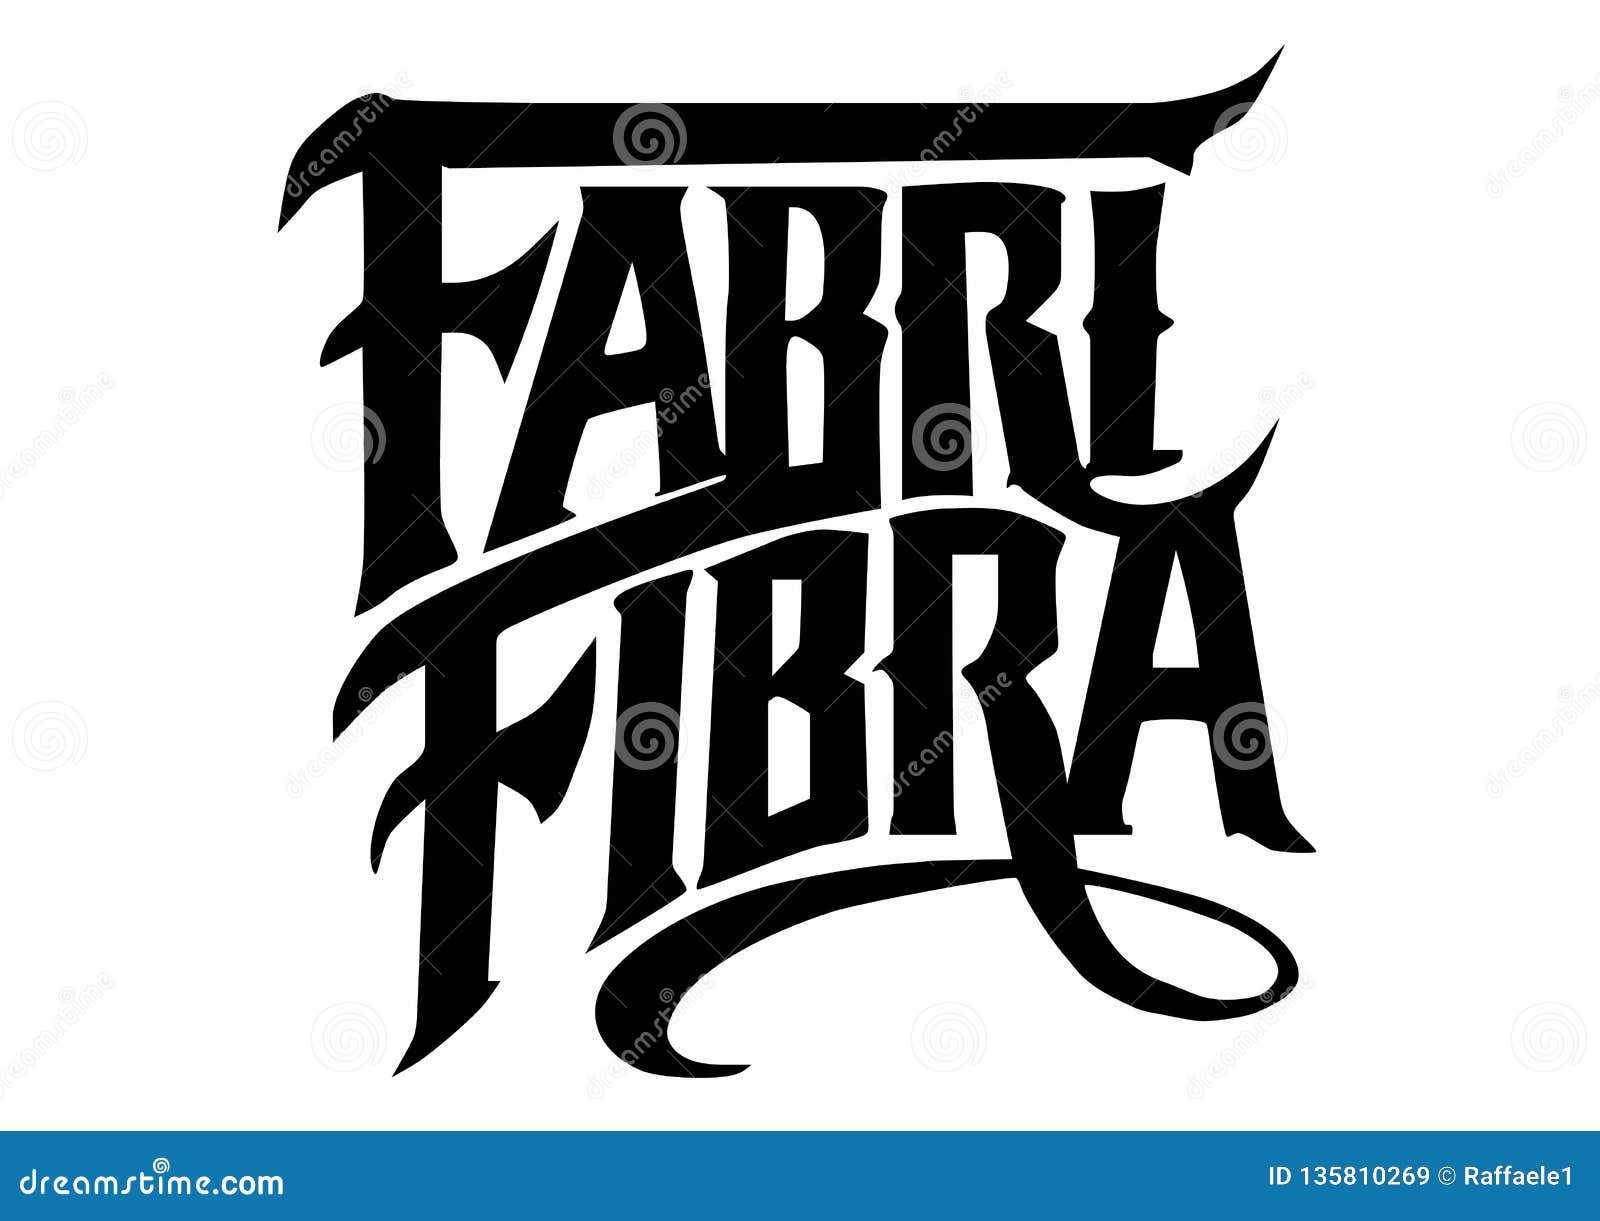 Fabri Fibra Logo Cartoon Vector | CartoonDealer.com #135810269